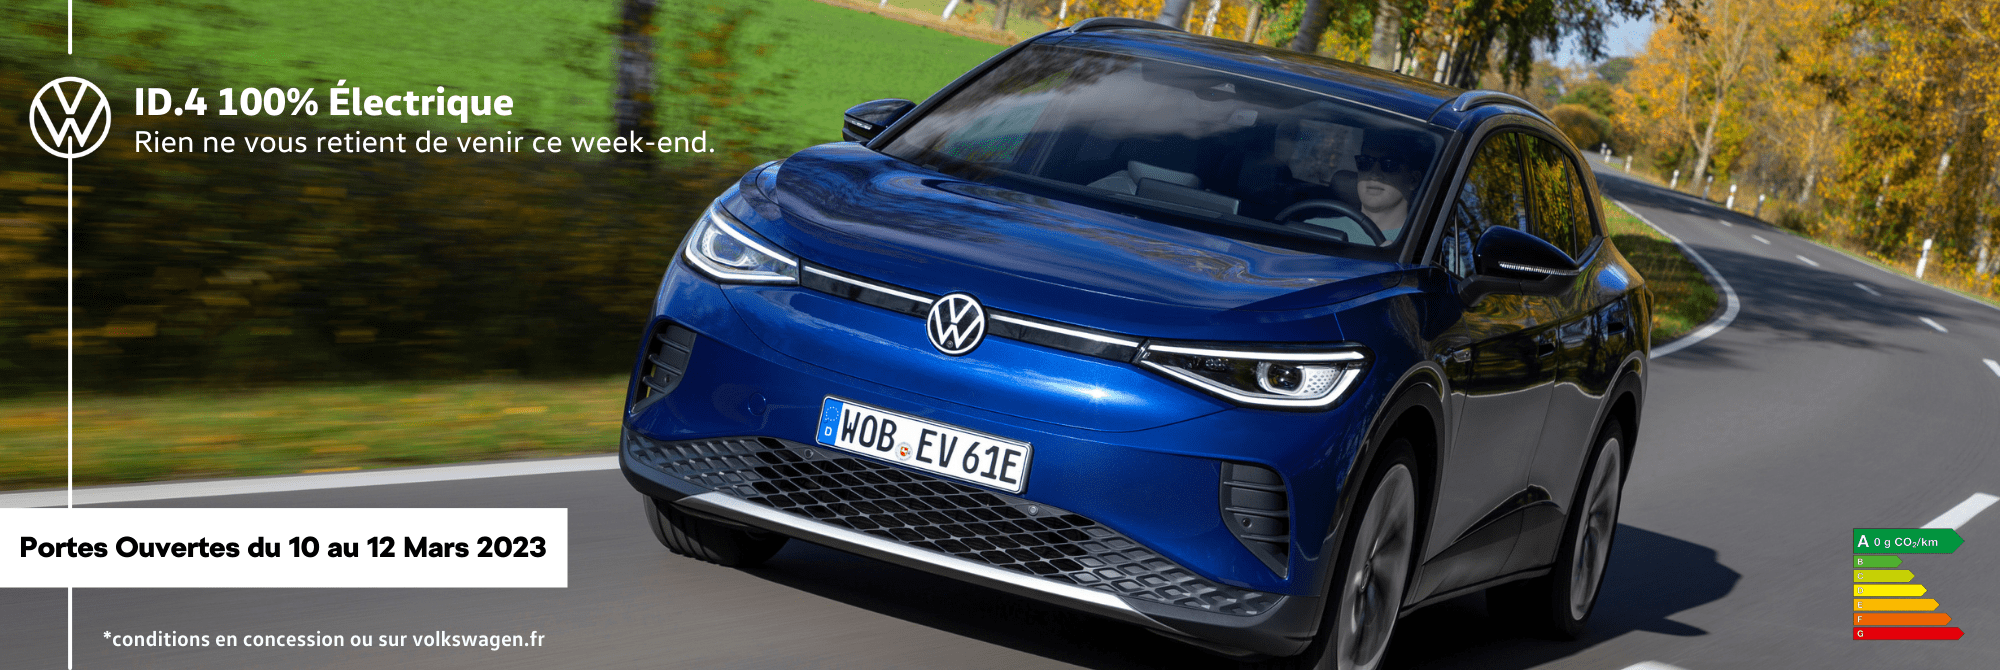 Volkswagen Villemomble - Venez passer un moment électrisant